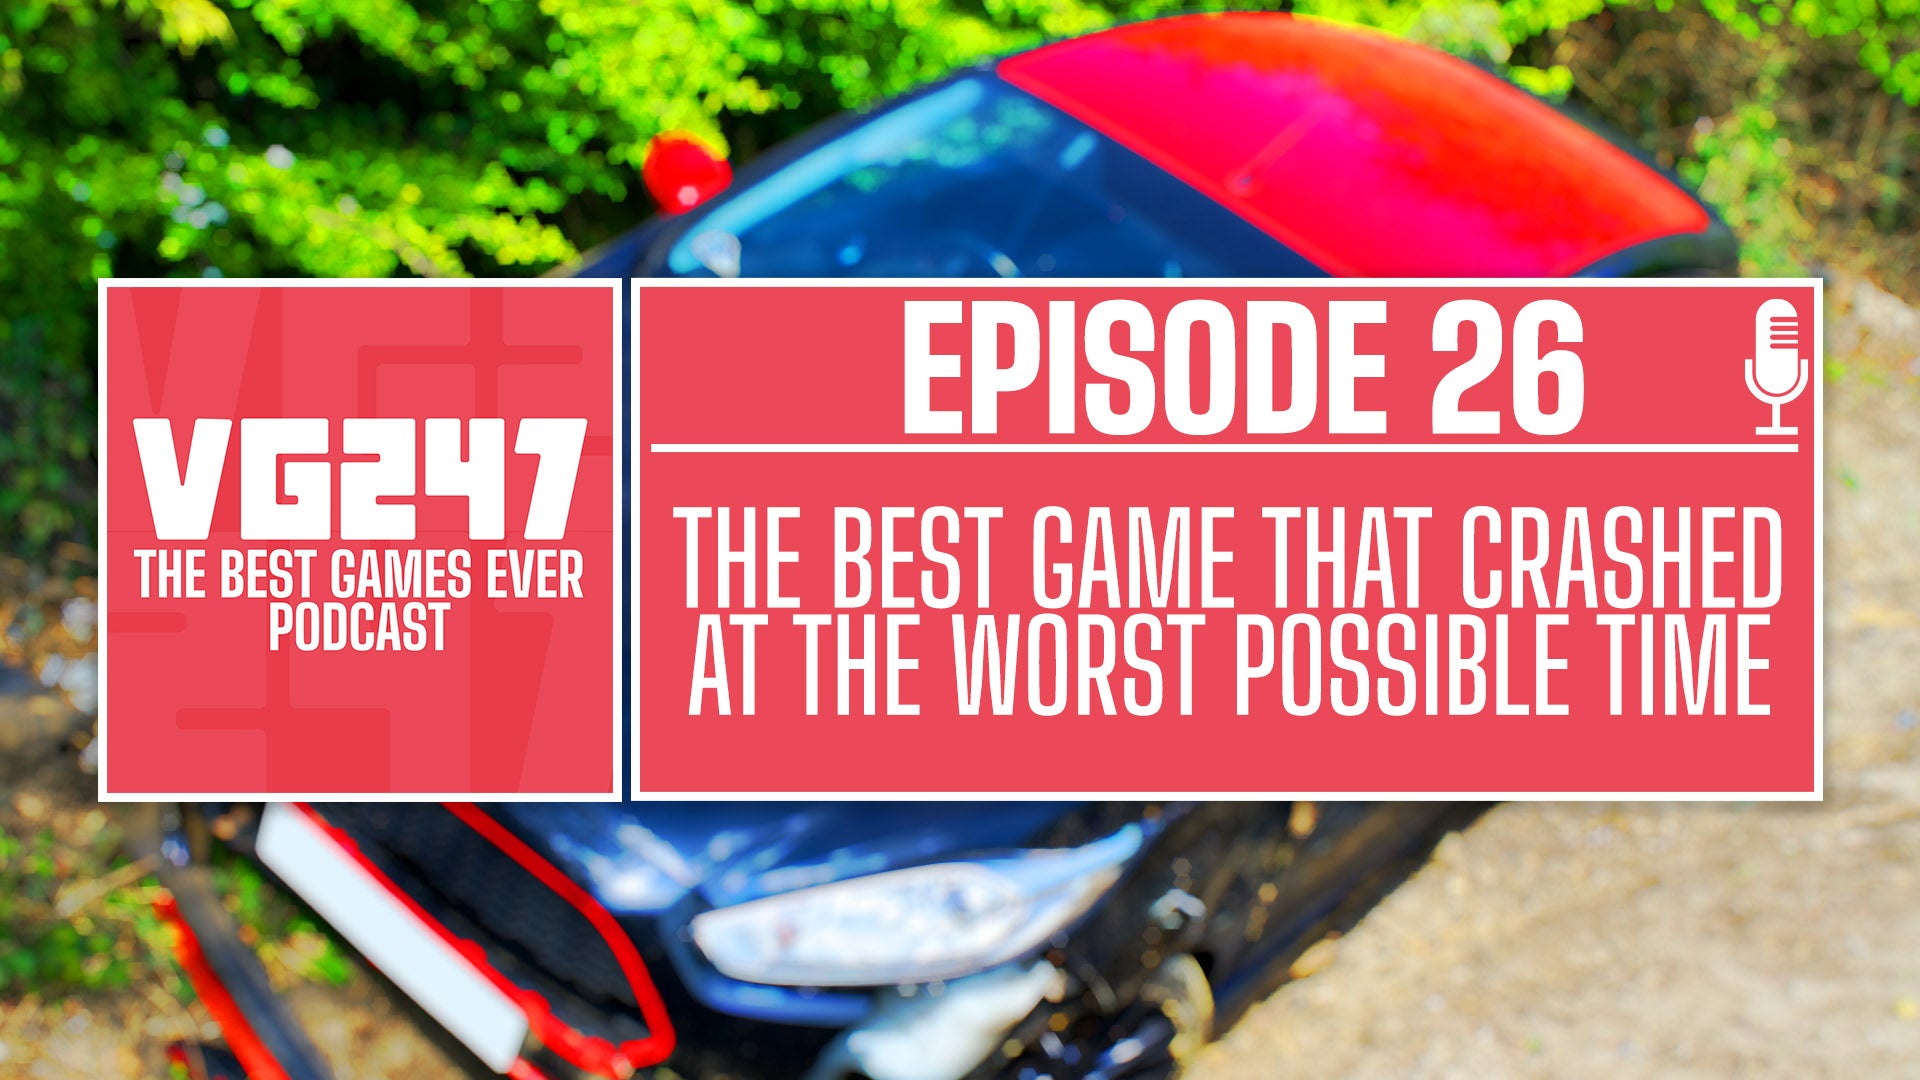 VG247’s The Best Games Ever Podcast – Ep.26: Game terbaik yang crash pada waktu yang paling buruk